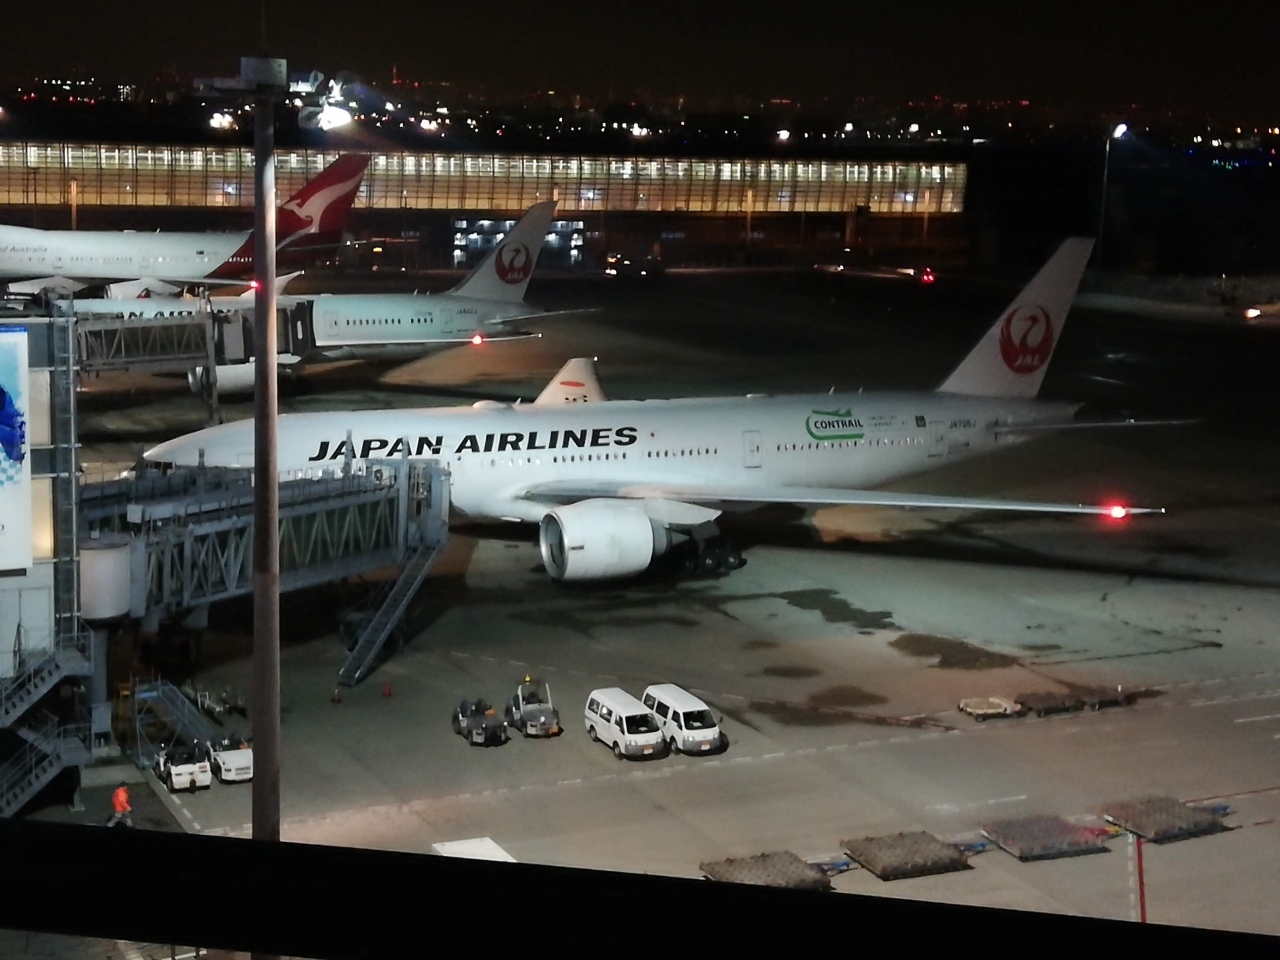 出発は羽田0:05発JL035便。

会社のある横浜へ妻に迎えに来てもらい、仕事終わりでそのまま羽田空港へ。
国内線P1駐車場に車を止め、シャトルバスで国際線ターミナルへ行き、チェックインを済ませる。
お決まりのフライトシミュレーターで遊んだり、展望デッキに出て写真を撮ったりして暇つぶし。

フライト1時間前ぐらいに、保安検査から出国審査をするわけですが、スタンプ押さずに出国出来ることに感動！

調べてみたら自動化ゲートっていうみたいだけど、これっていつからなの？
少なくとも一昨年は無かった。

便利な世の中になったもんだね～

待ち時間がないのは良いんだけど、旅の記念でもあるスタンプが無いのは寂しいかも。
(その後、子どもたちは別室で押してもらいましたが。笑)

離陸後、ペットボトルの水が配られ、それを飲みながら映画鑑賞。
見た映画は「コーヒーが冷めないうちに」

なかなか良い映画だったなぁ。
暗闇の中、1人ボロボロ涙を流しながら映画を見ていたことは内緒にしといてください。笑